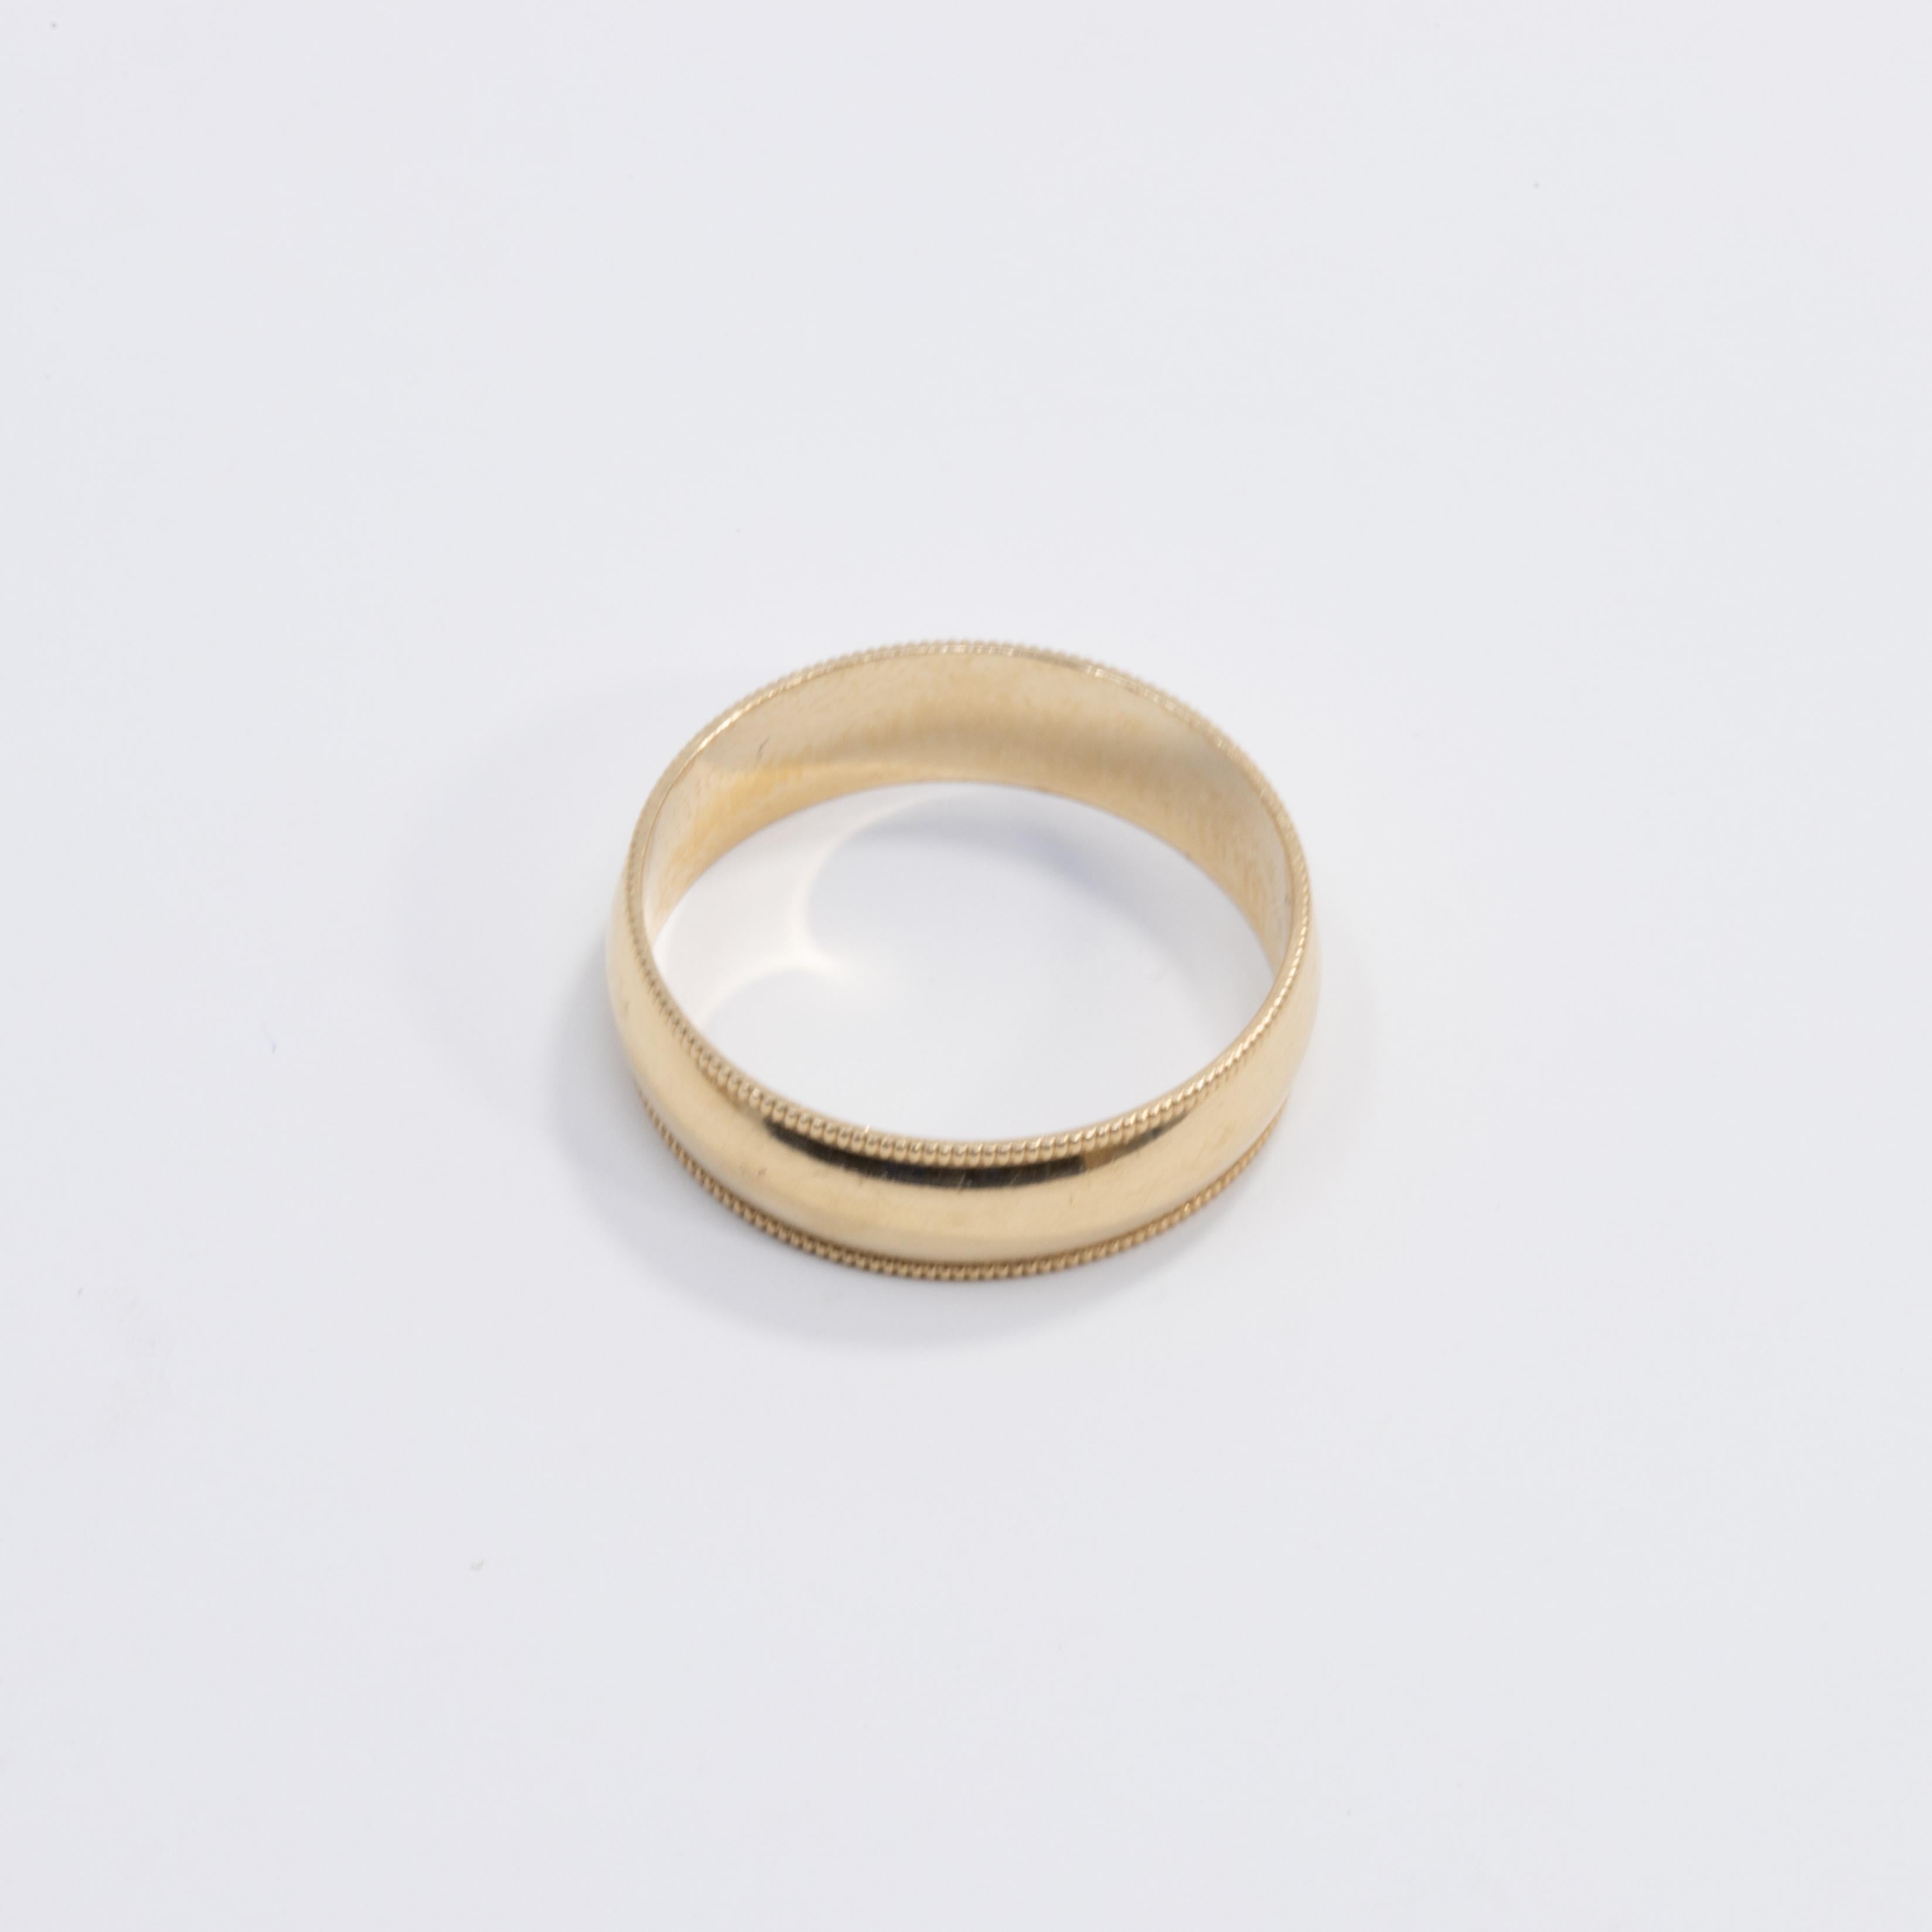 Ein fein detaillierter Ehering aus 14 Karat Gelbgold für Männer. Perfekt für die wichtigen Momente in Ihrem Leben und als stilvolles Accessoire.

Ring Größe US 5.75
Höhe 5 mm